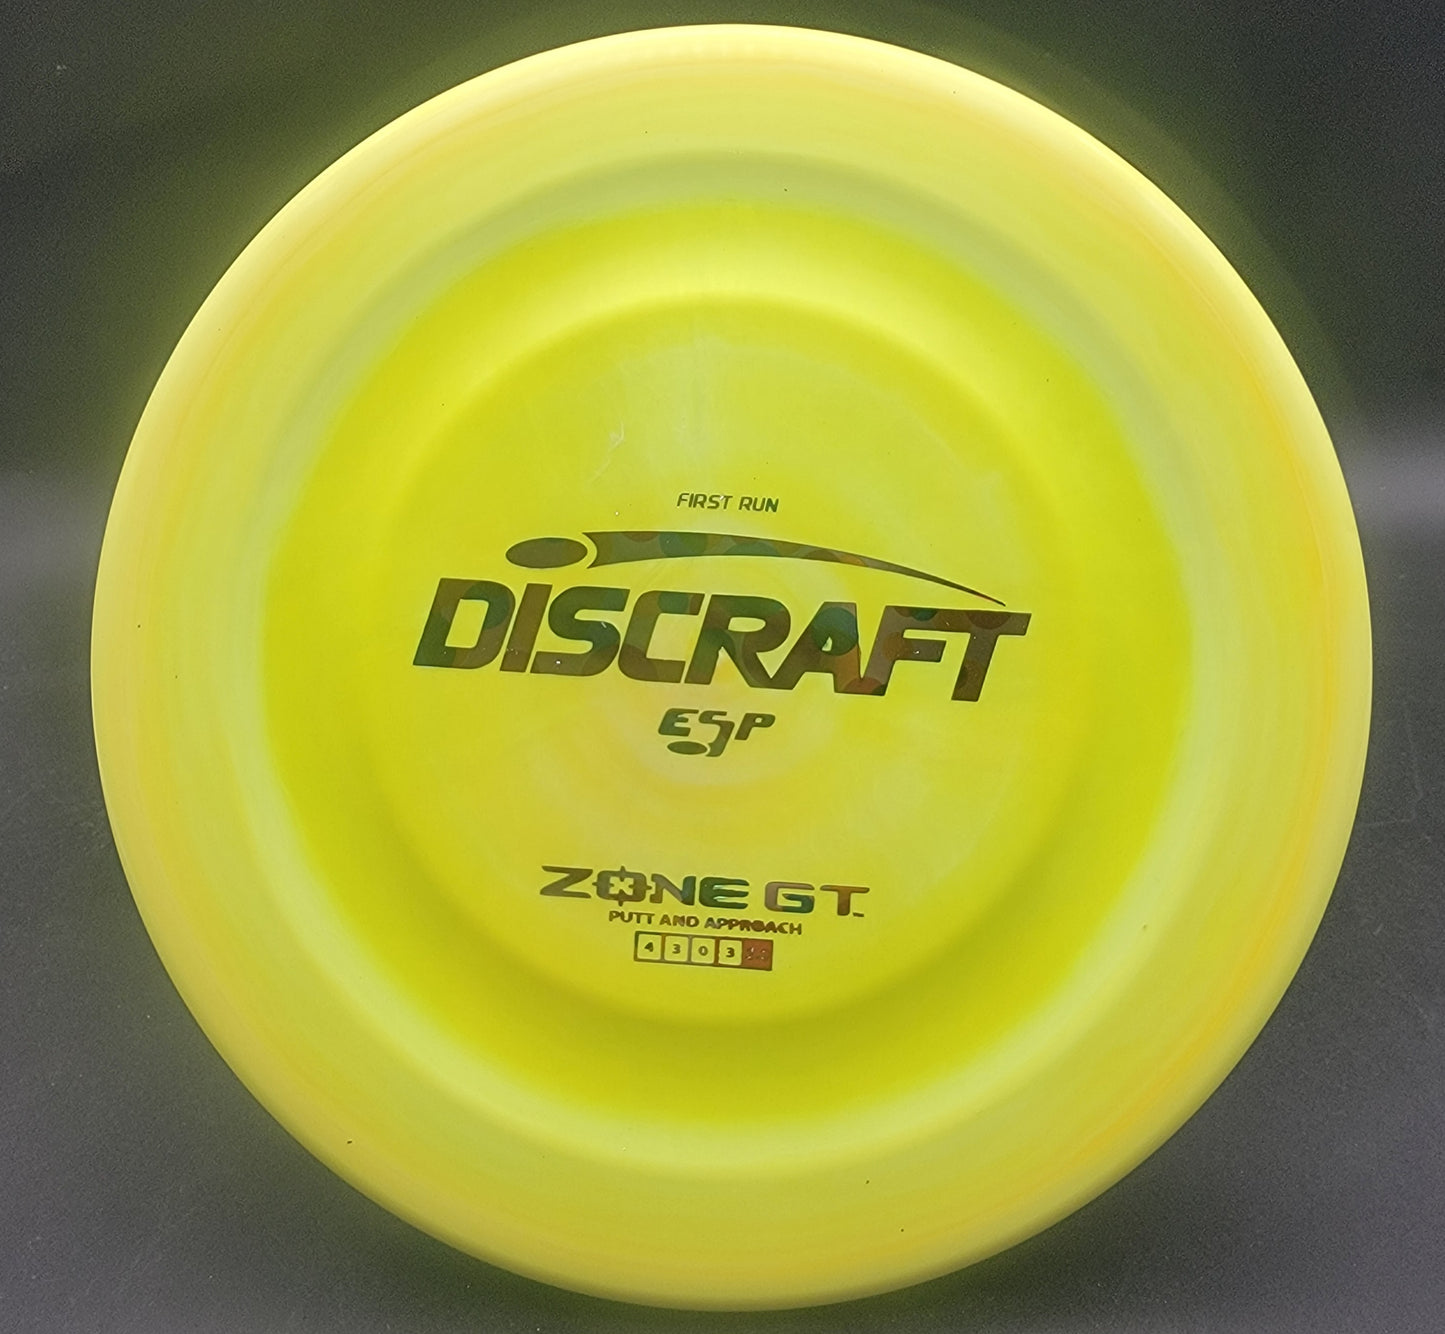 Discraft First Run ESP Zone GT